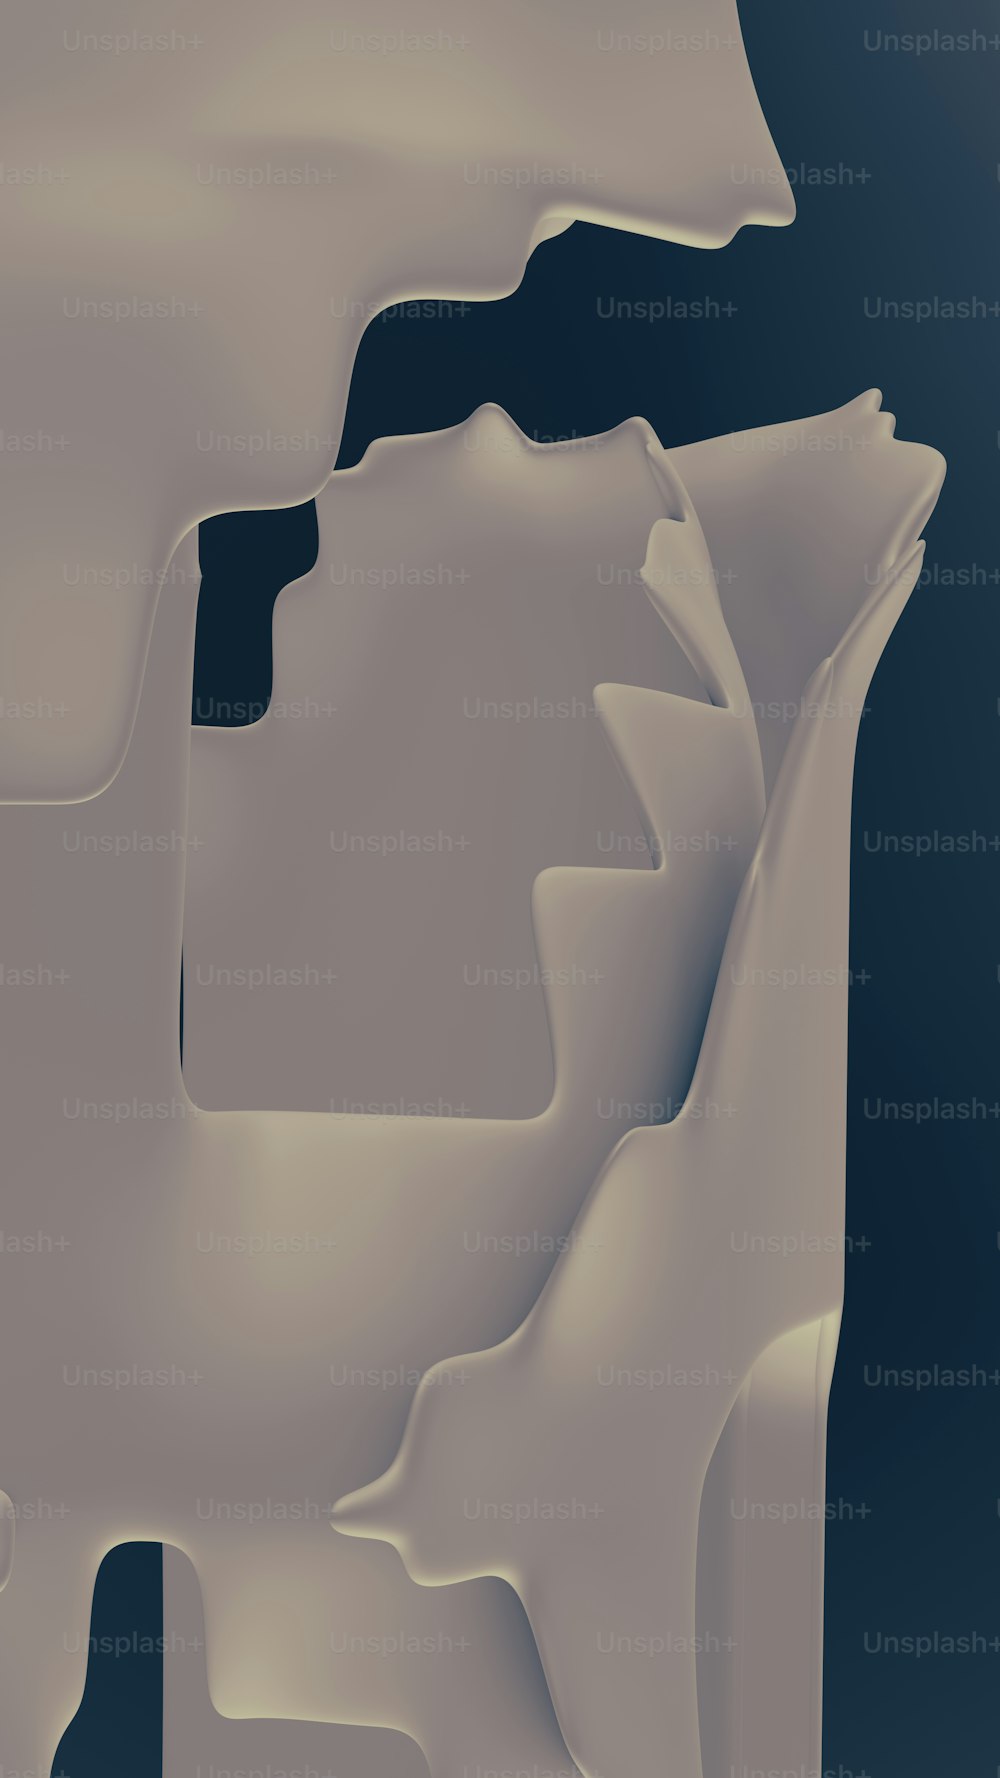 Un'immagine generata al computer di un iceberg